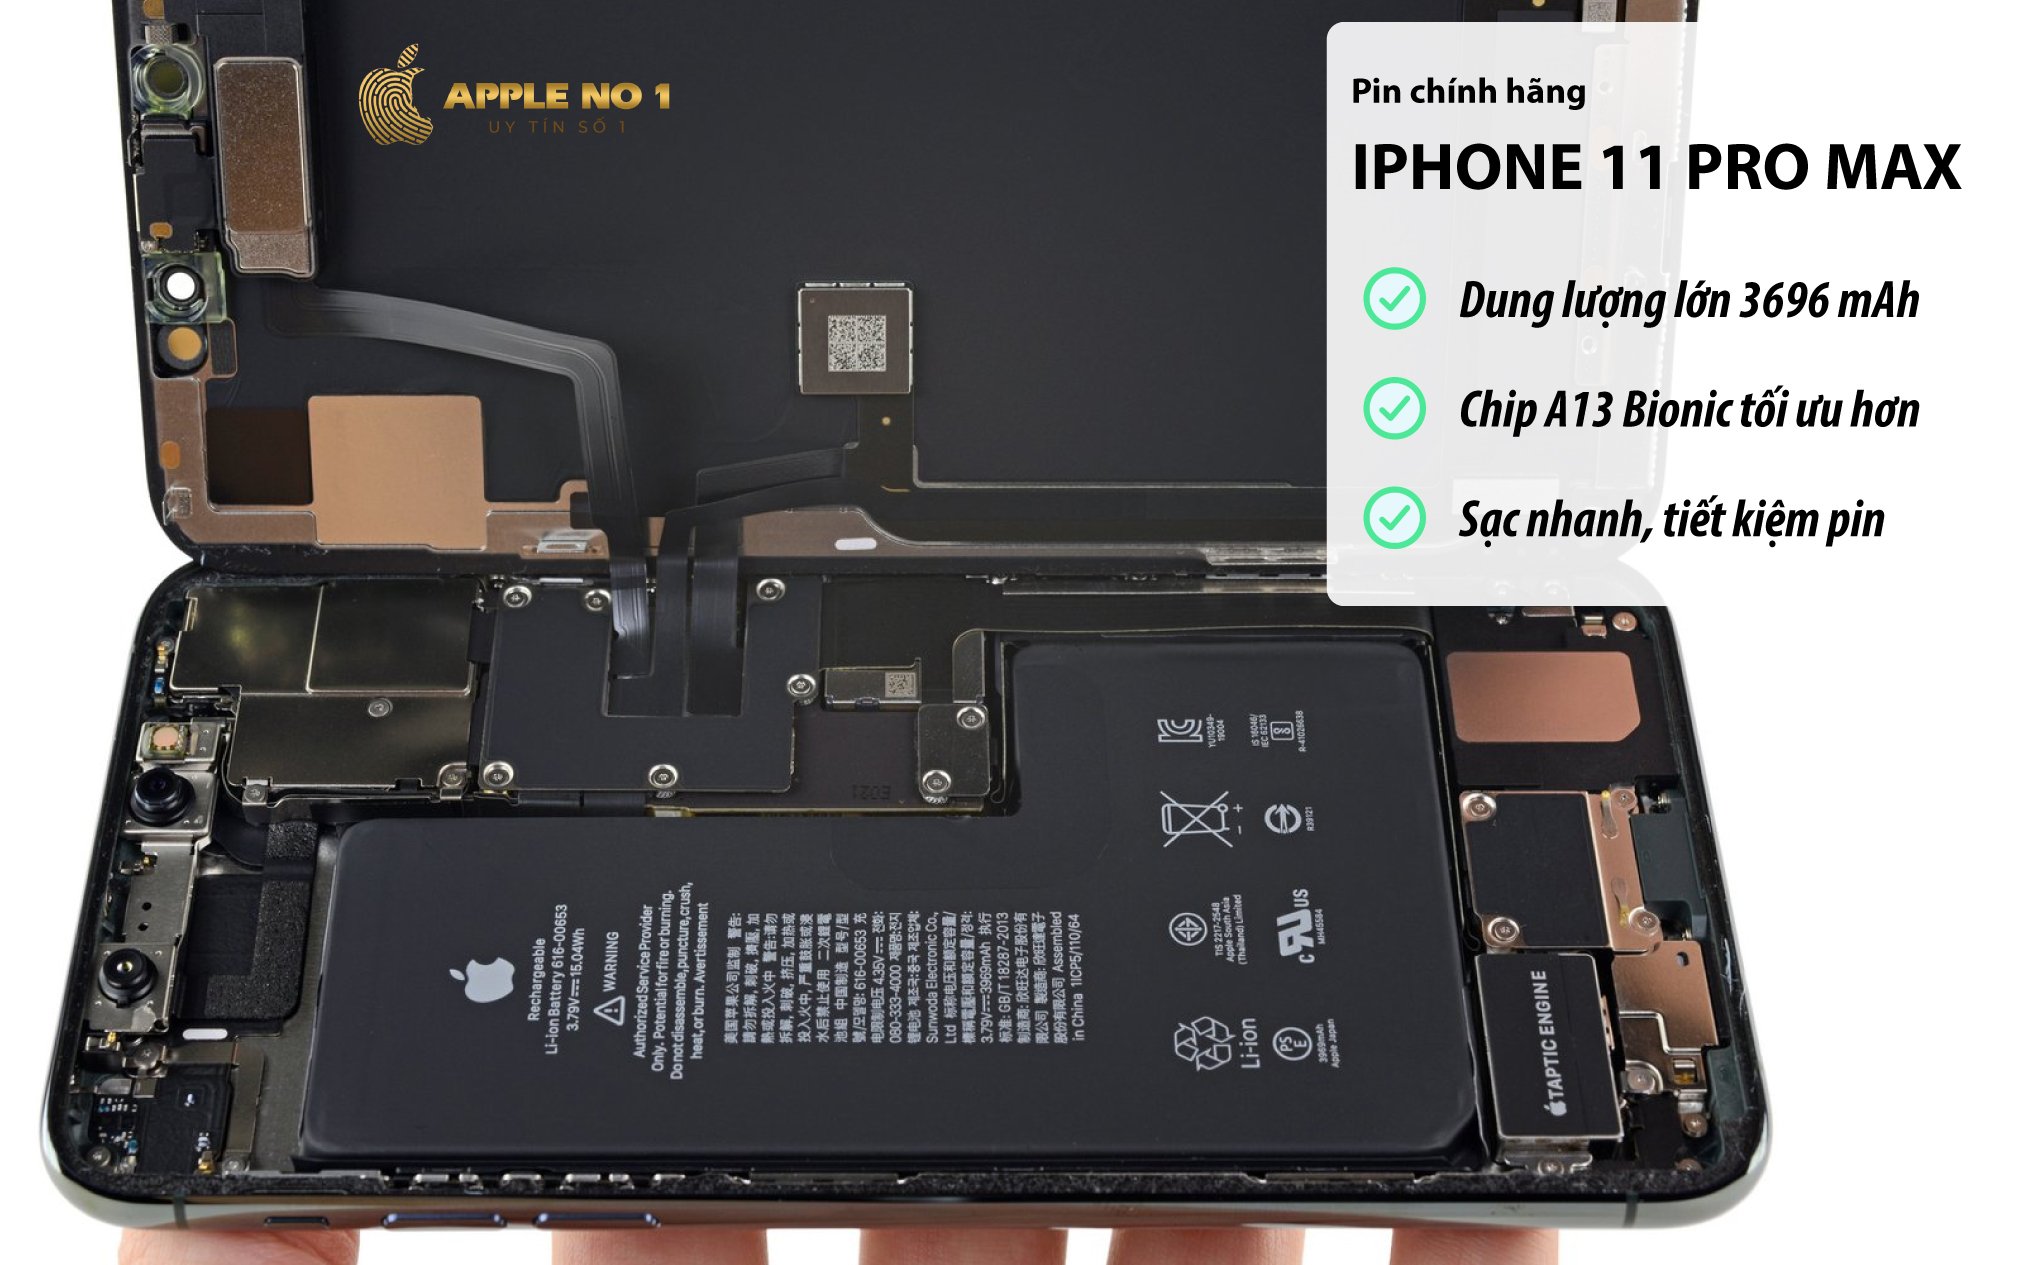 iPhone 11 Pro Max sở hữu dung lượng pin 3696mAh cho thời gian sử dụng lâu hơn